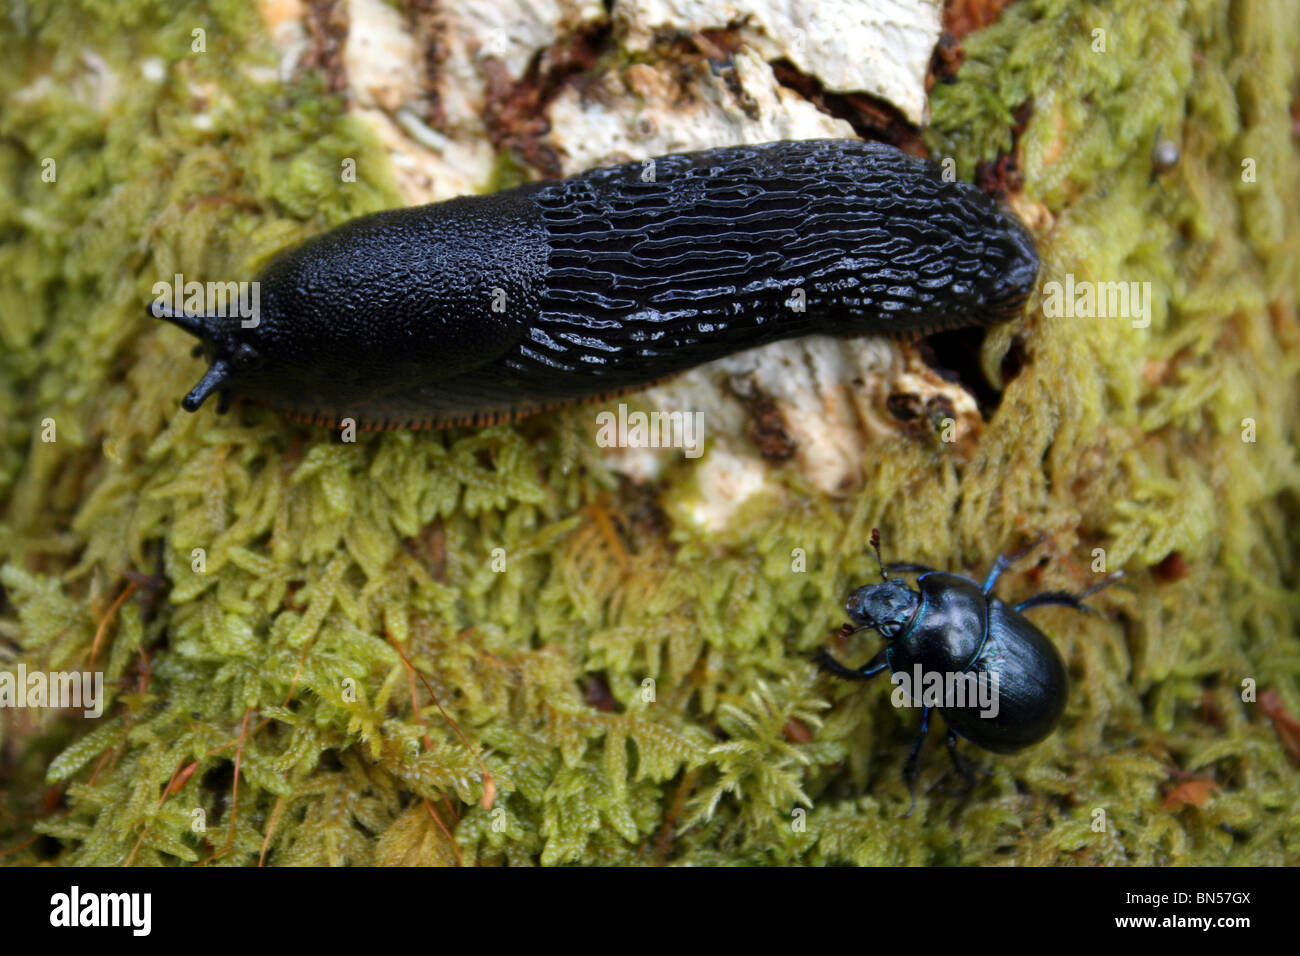 Black Slug Arion ater and Dor Beetle Geotrupes stercorarius Taken In Cumbria, UK Stock Photo